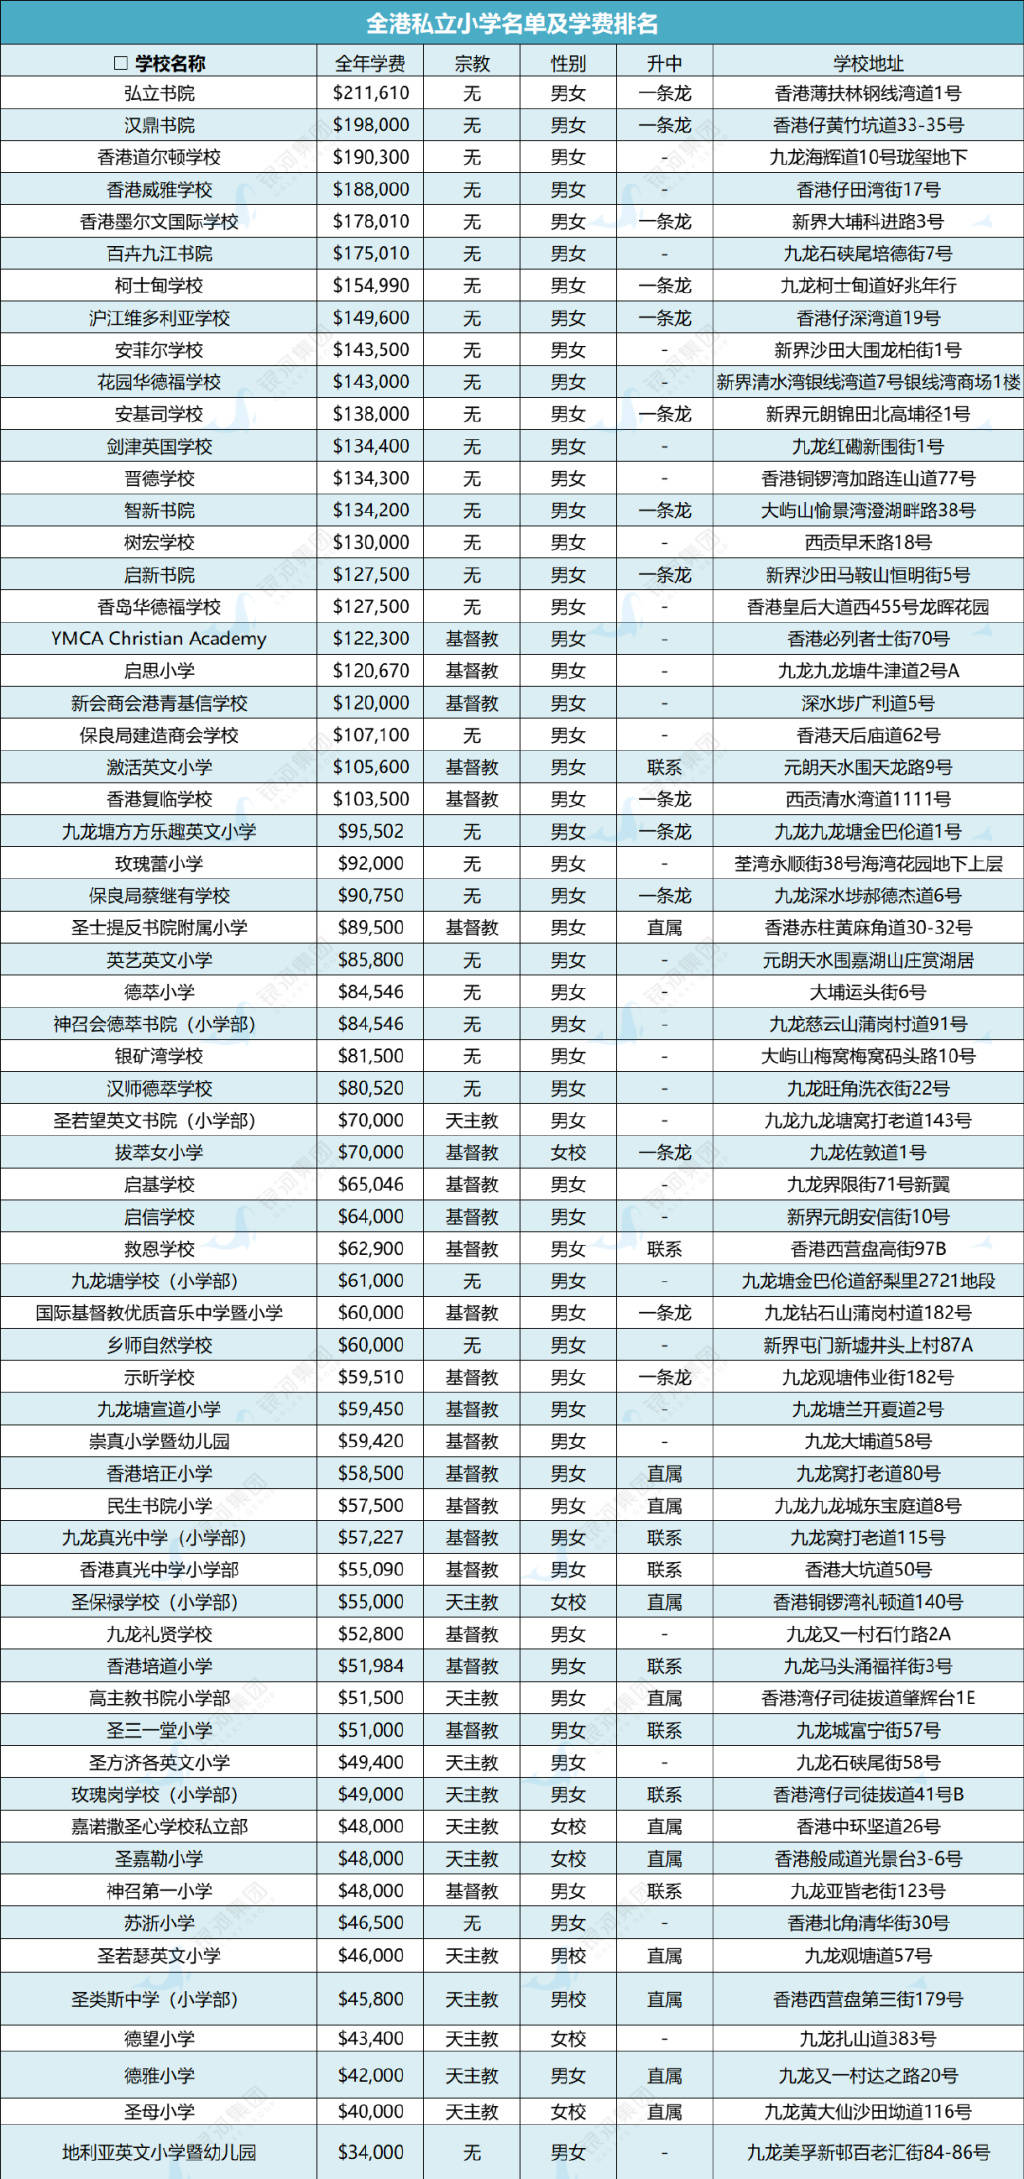 香港各大私立小学名单及学费情况